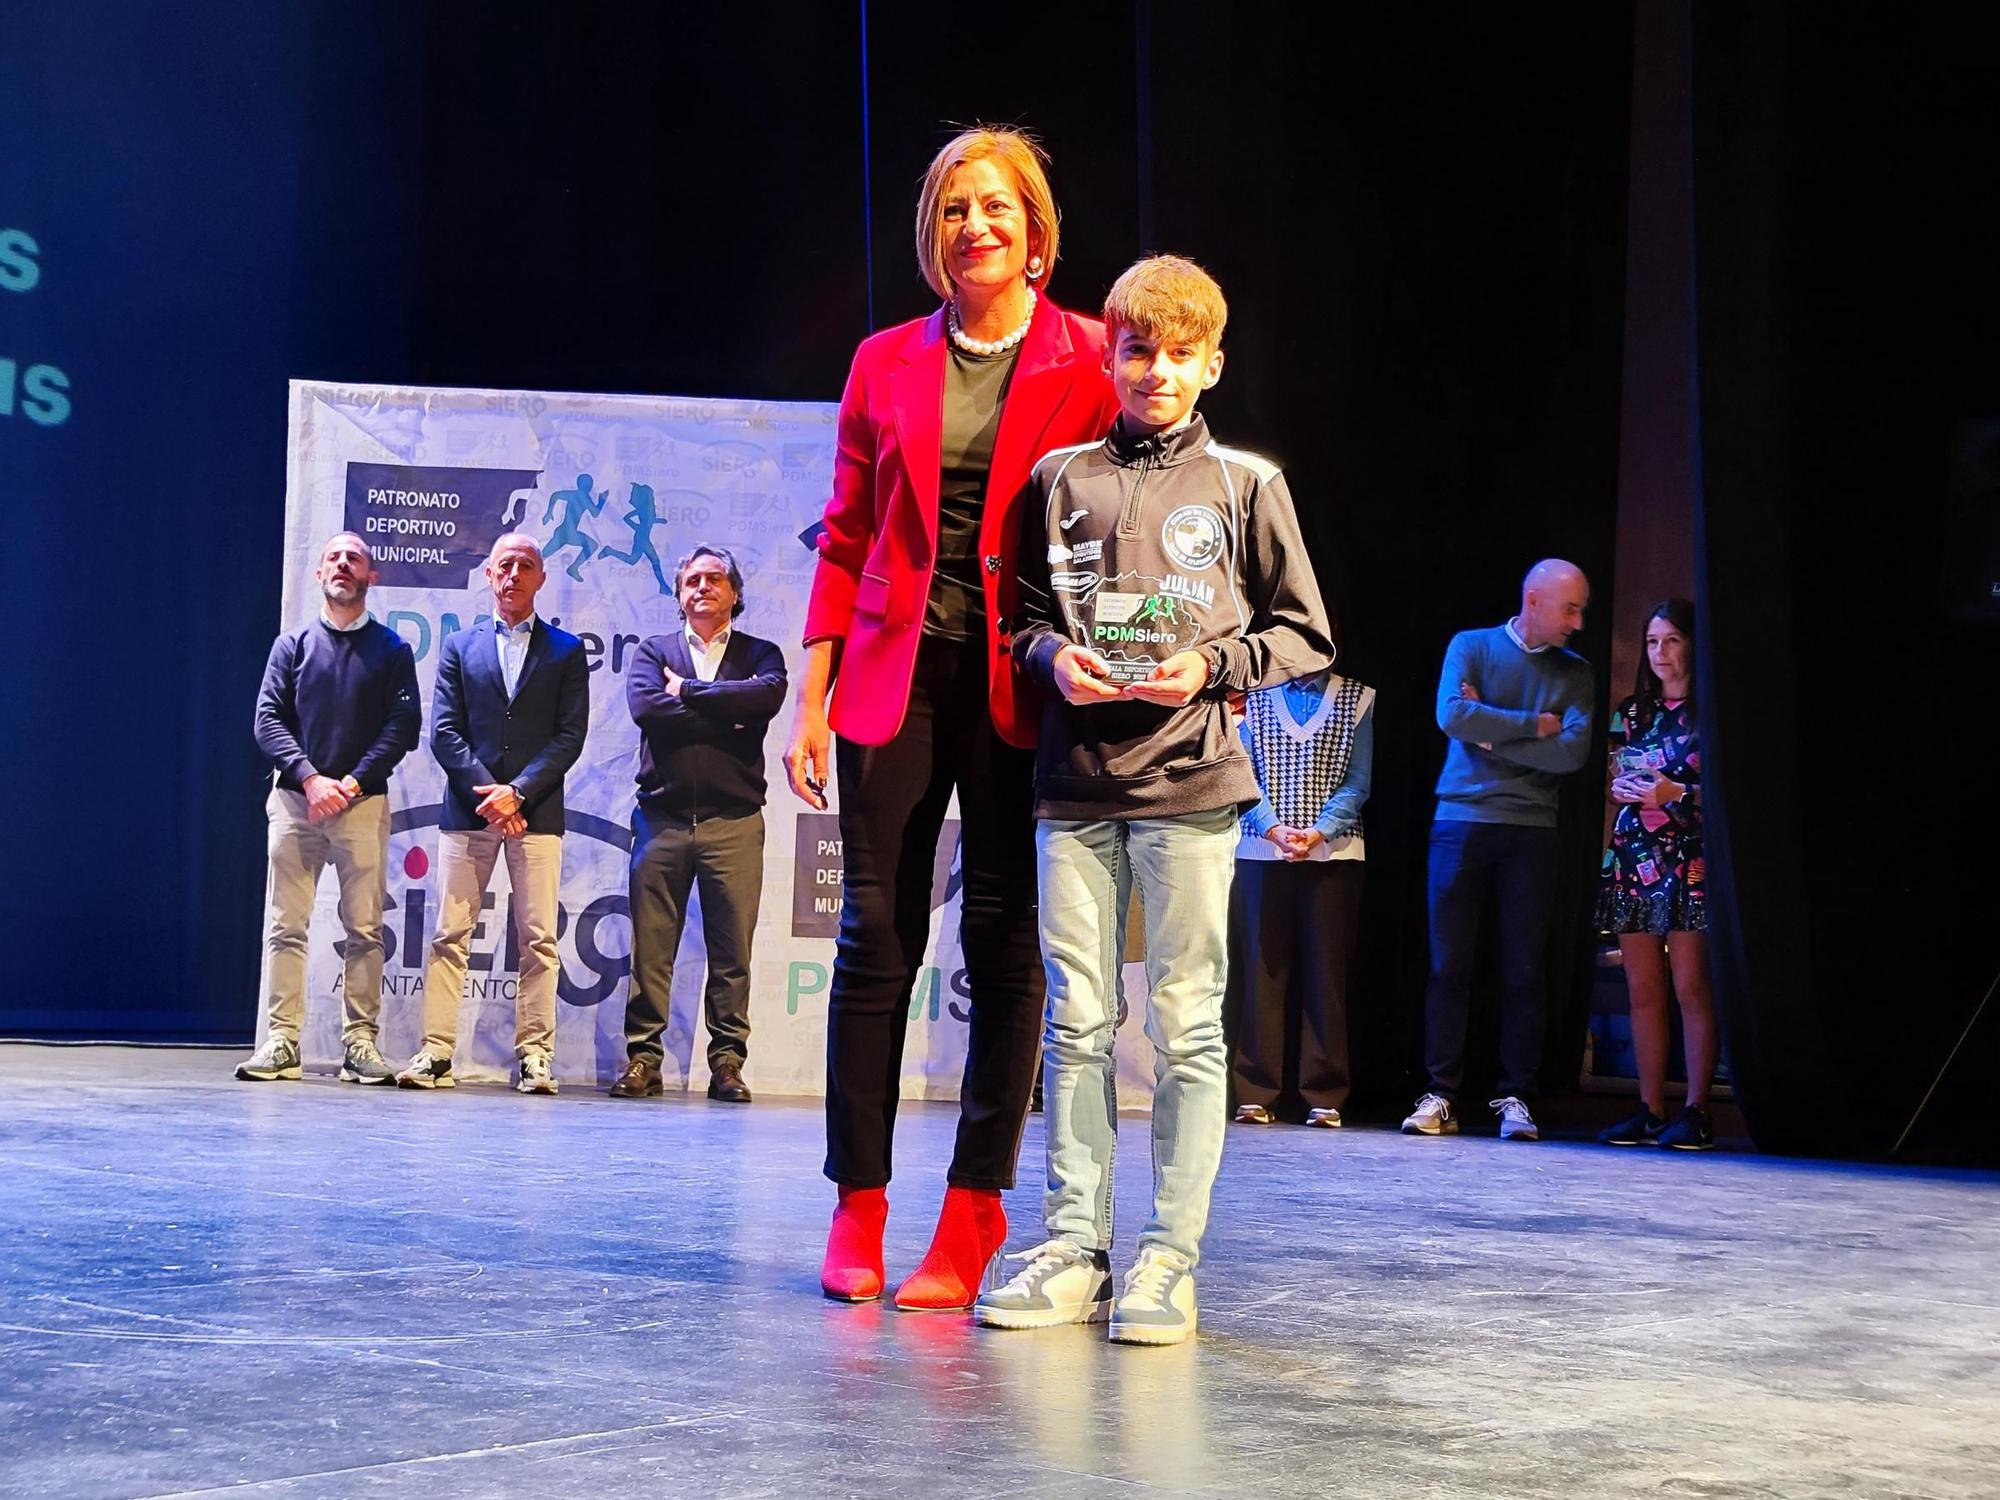 Siero premia el esfuerzo de una vida saludable: así fue la Gala del Deporte